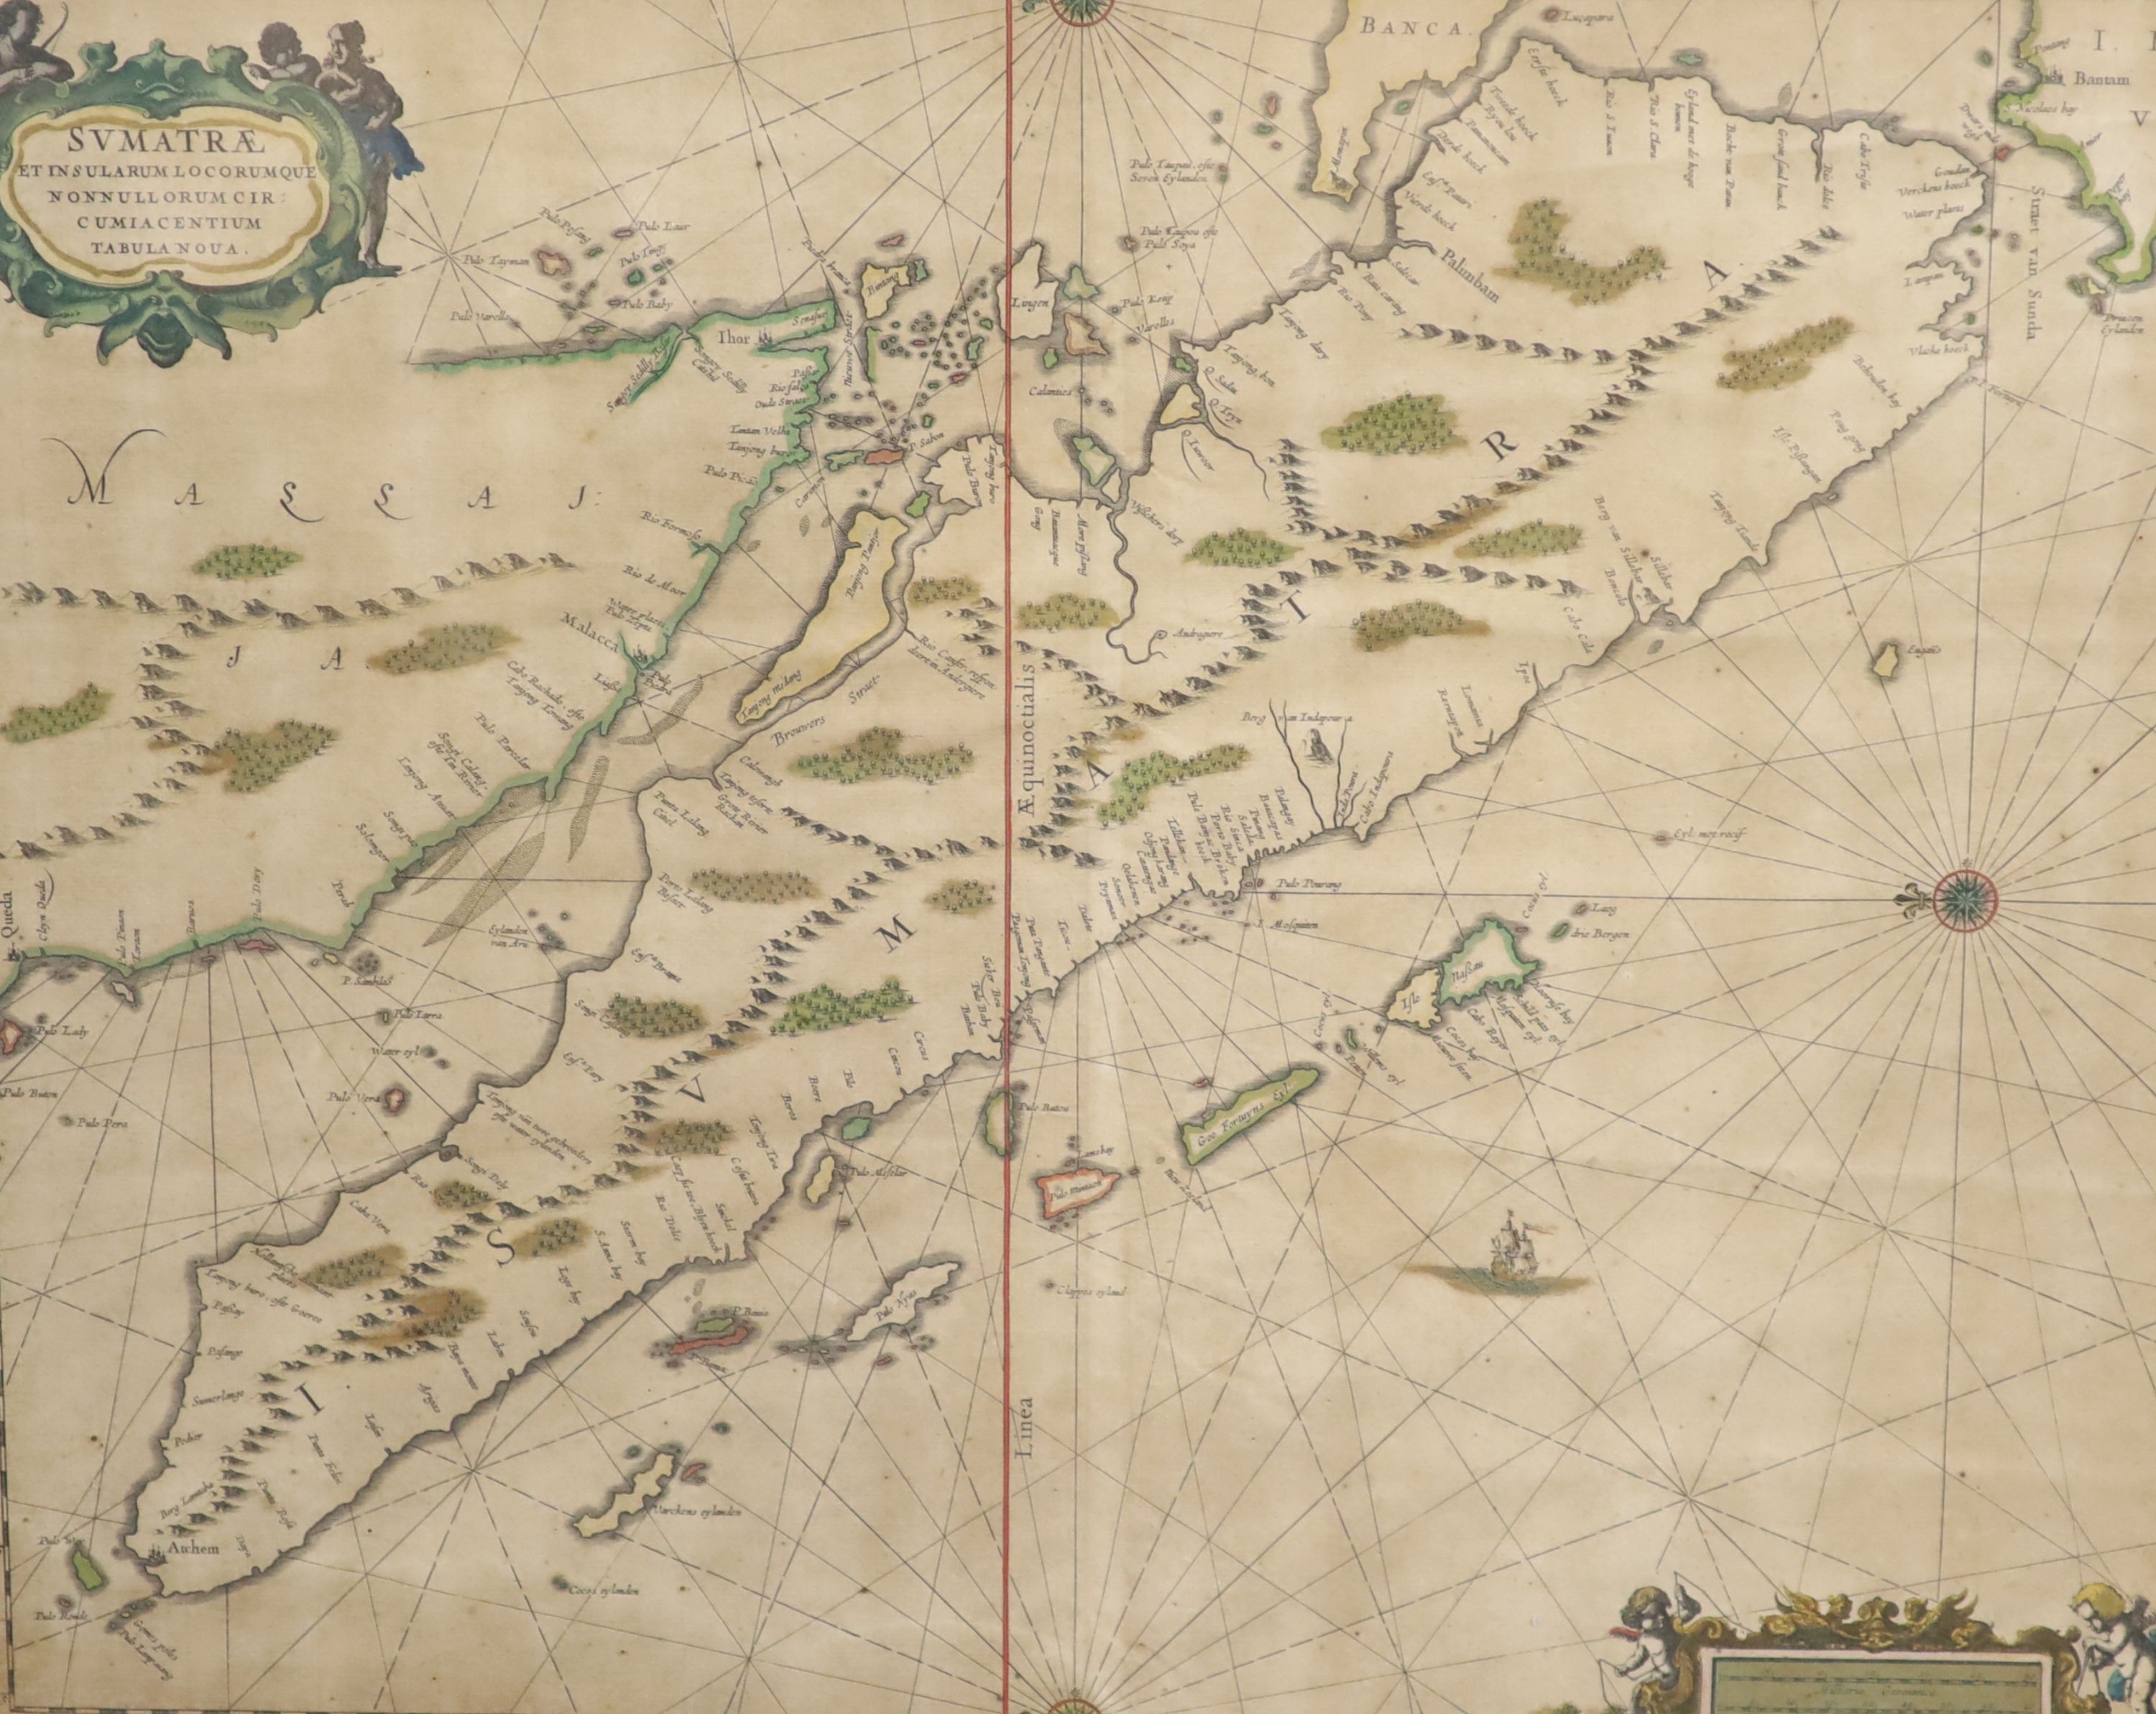 Gerard Van Keulen (1678-1726) Map of Sumatrae, inscribed ‘Svmatrae et Insularum Locorumque